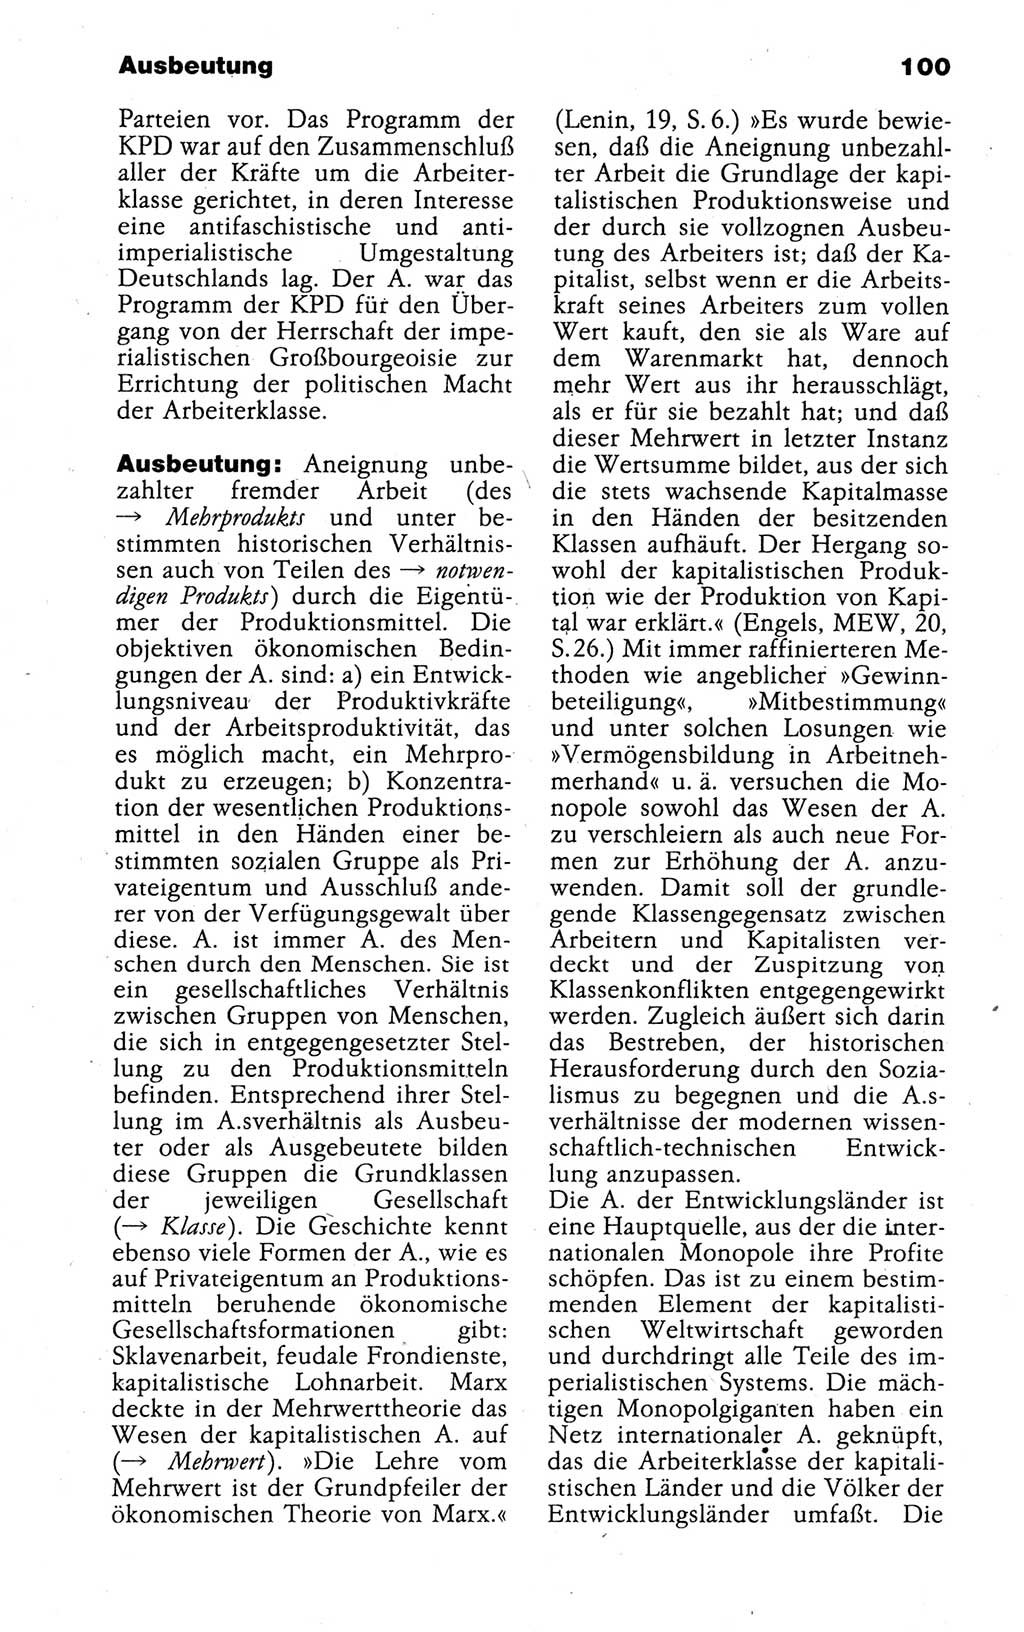 Kleines politisches Wörterbuch [Deutsche Demokratische Republik (DDR)] 1988, Seite 100 (Kl. pol. Wb. DDR 1988, S. 100)